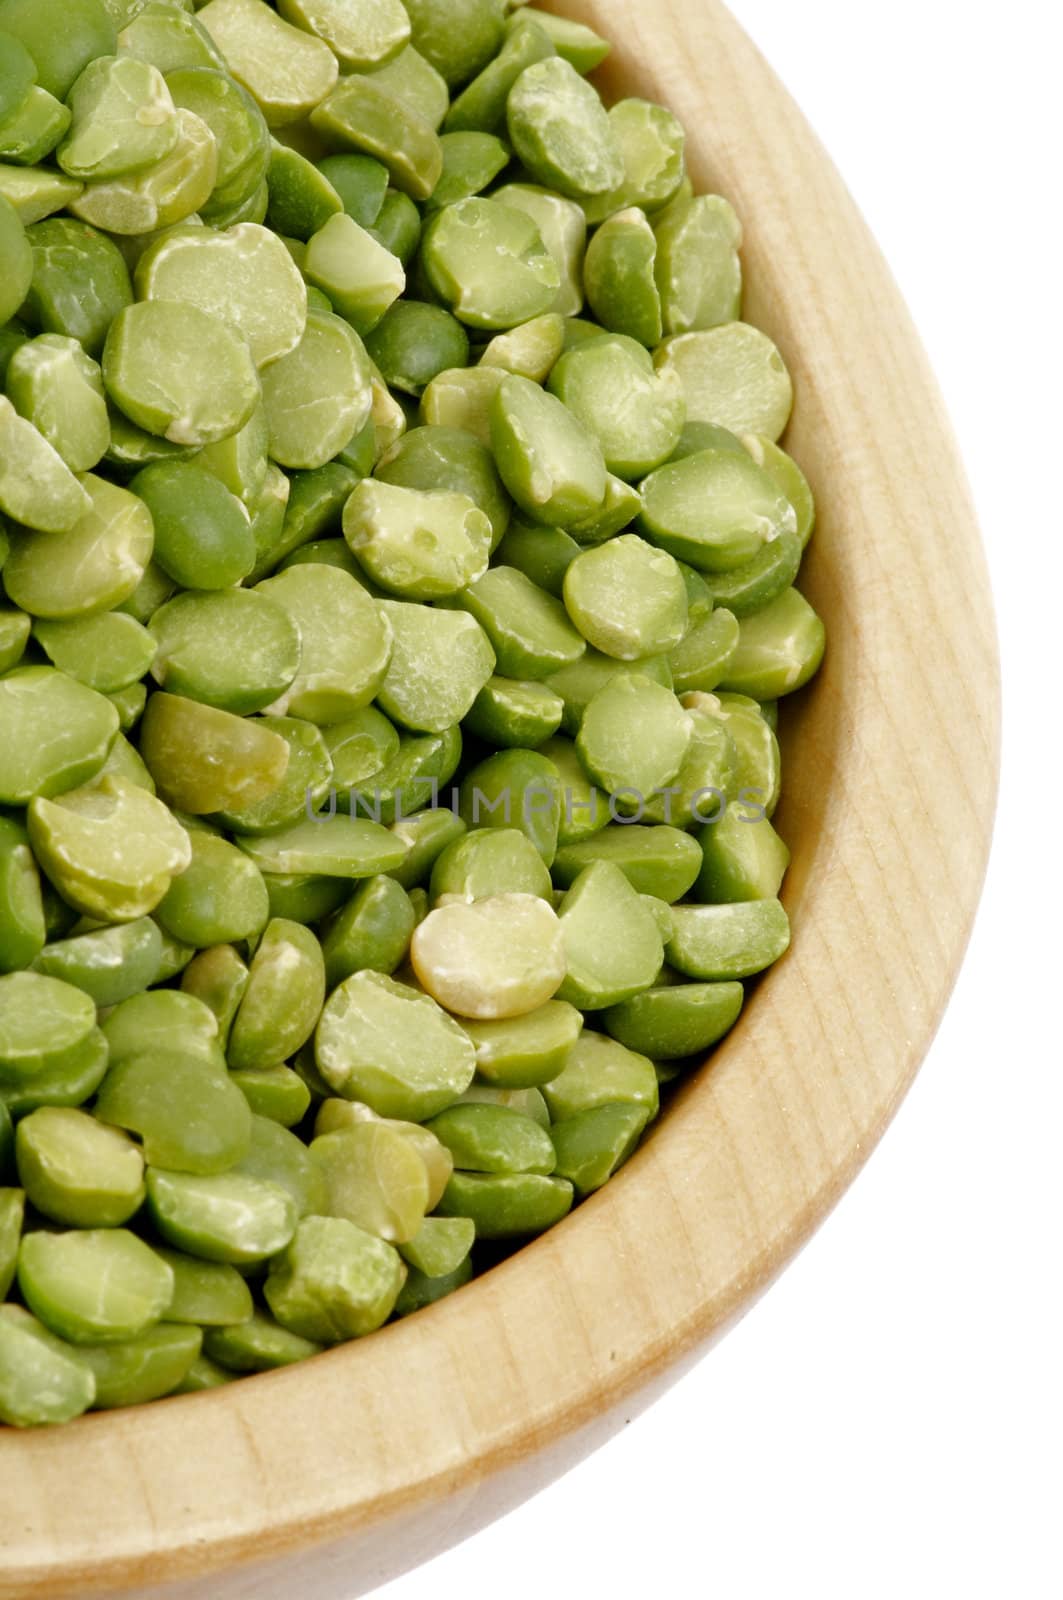 Green Split Peas by zhekos